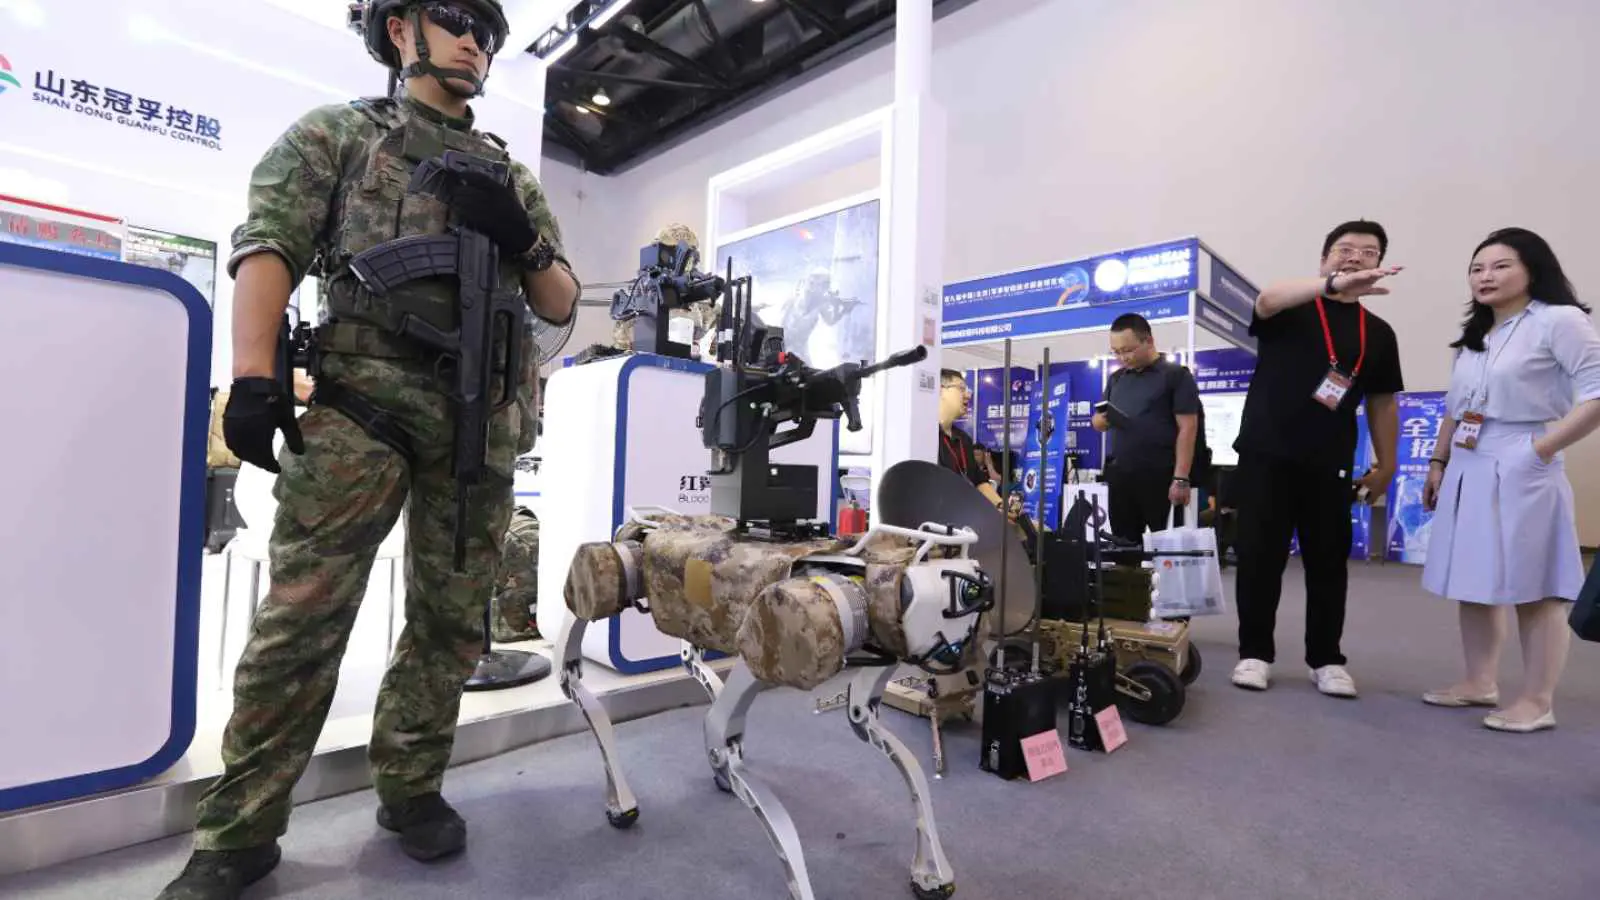 "تهديد خطير".. نائب أمريكي يحذر من كلاب صينية تعمل "آلية"